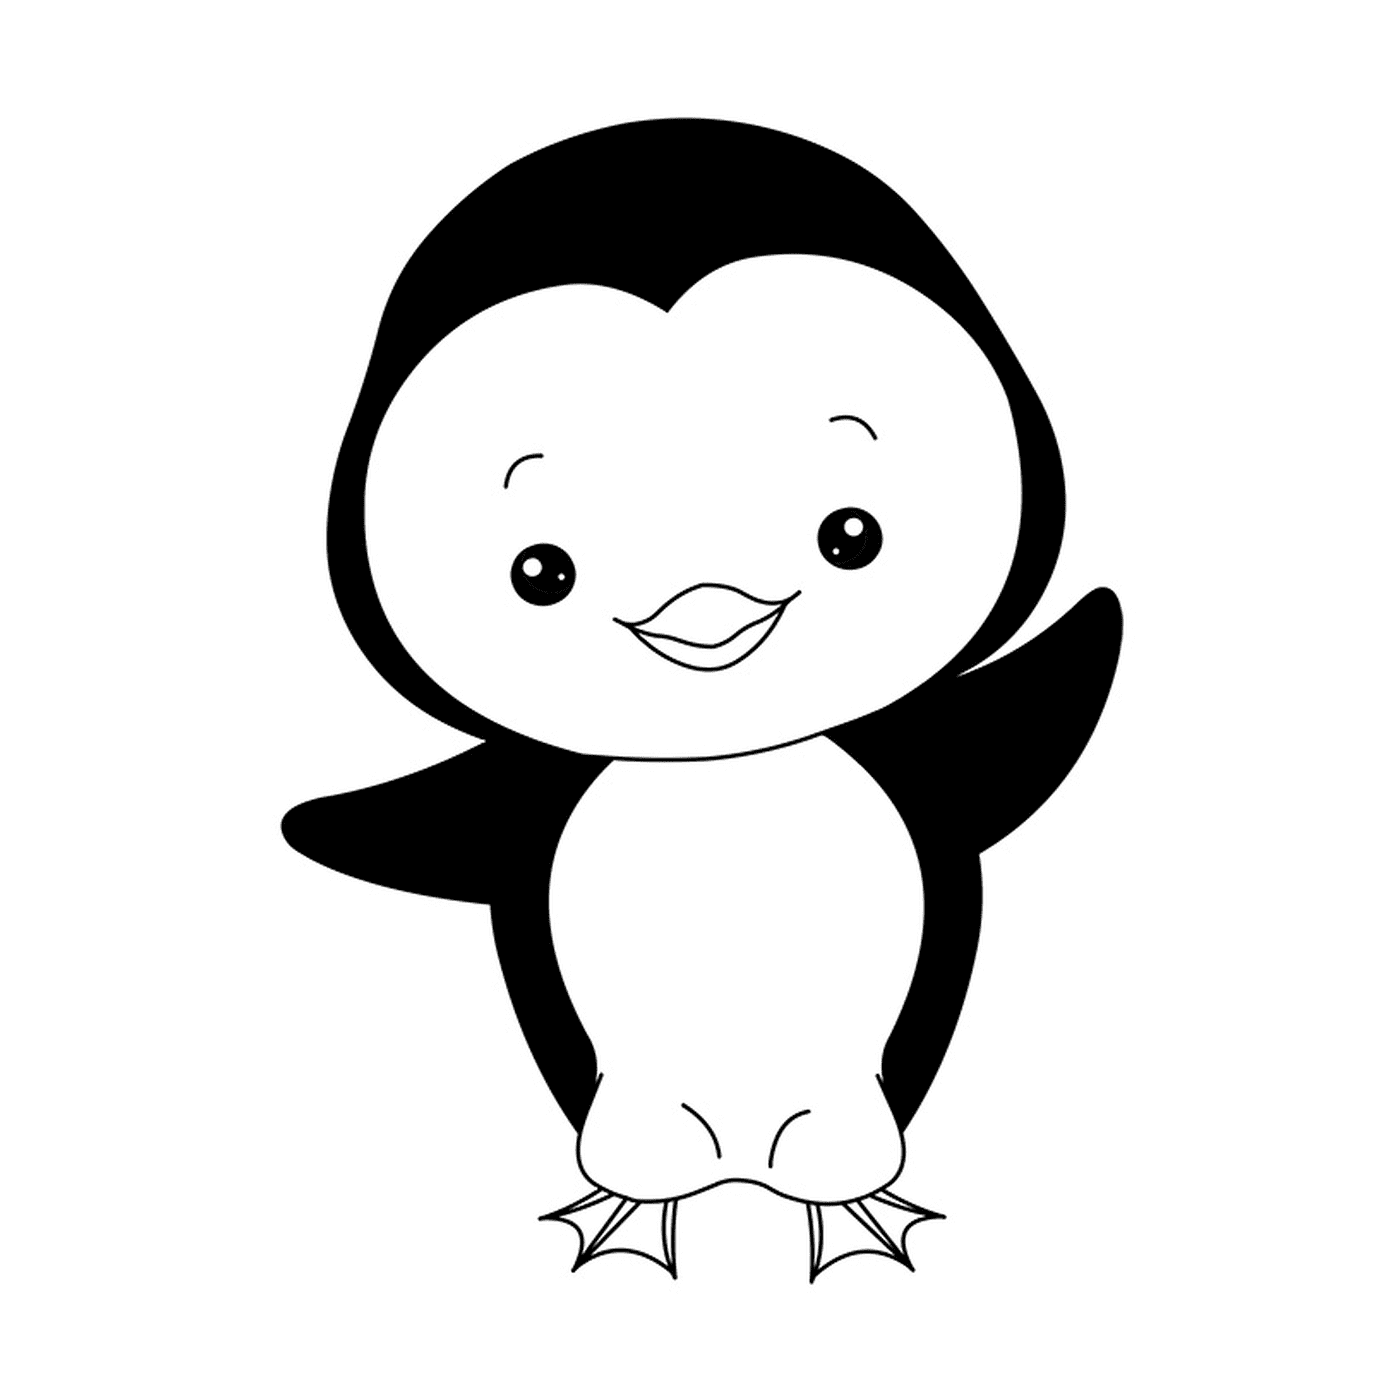  Imagen de un pingüino bebé 